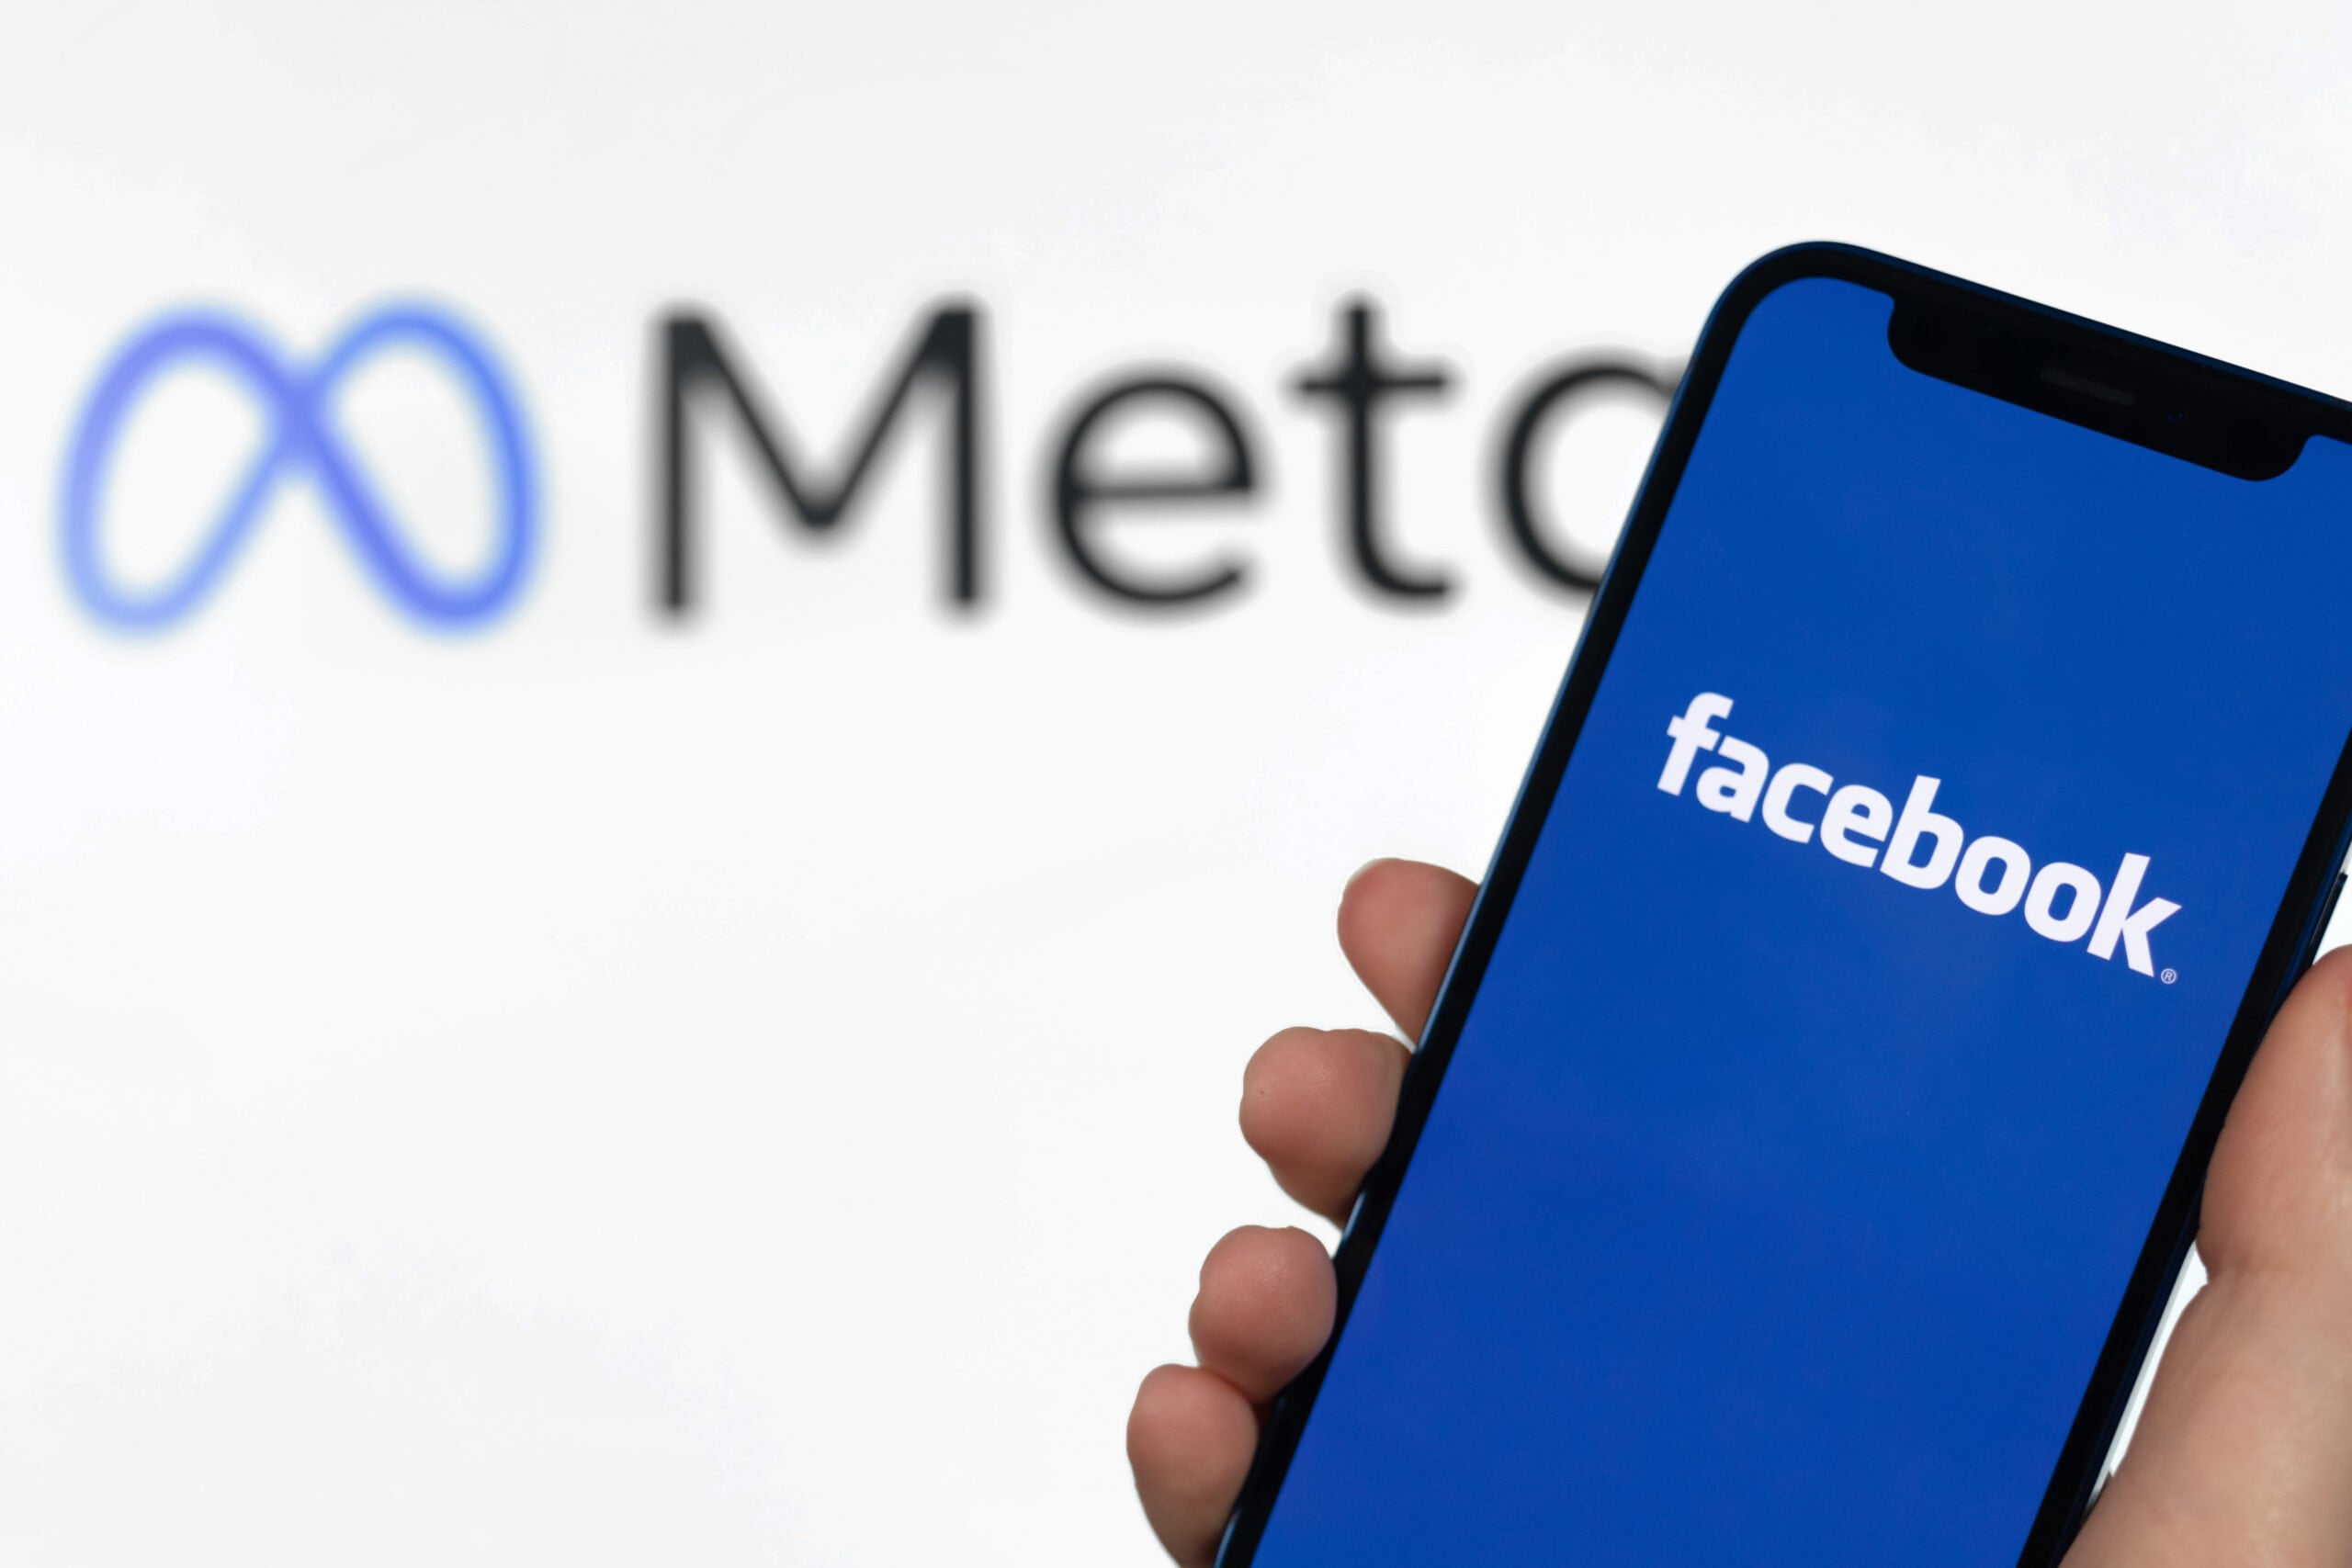 Dłoń trzymająca smartfon z logo Facebooka na ekranie, w tle rozmyte logo firmy Meta.